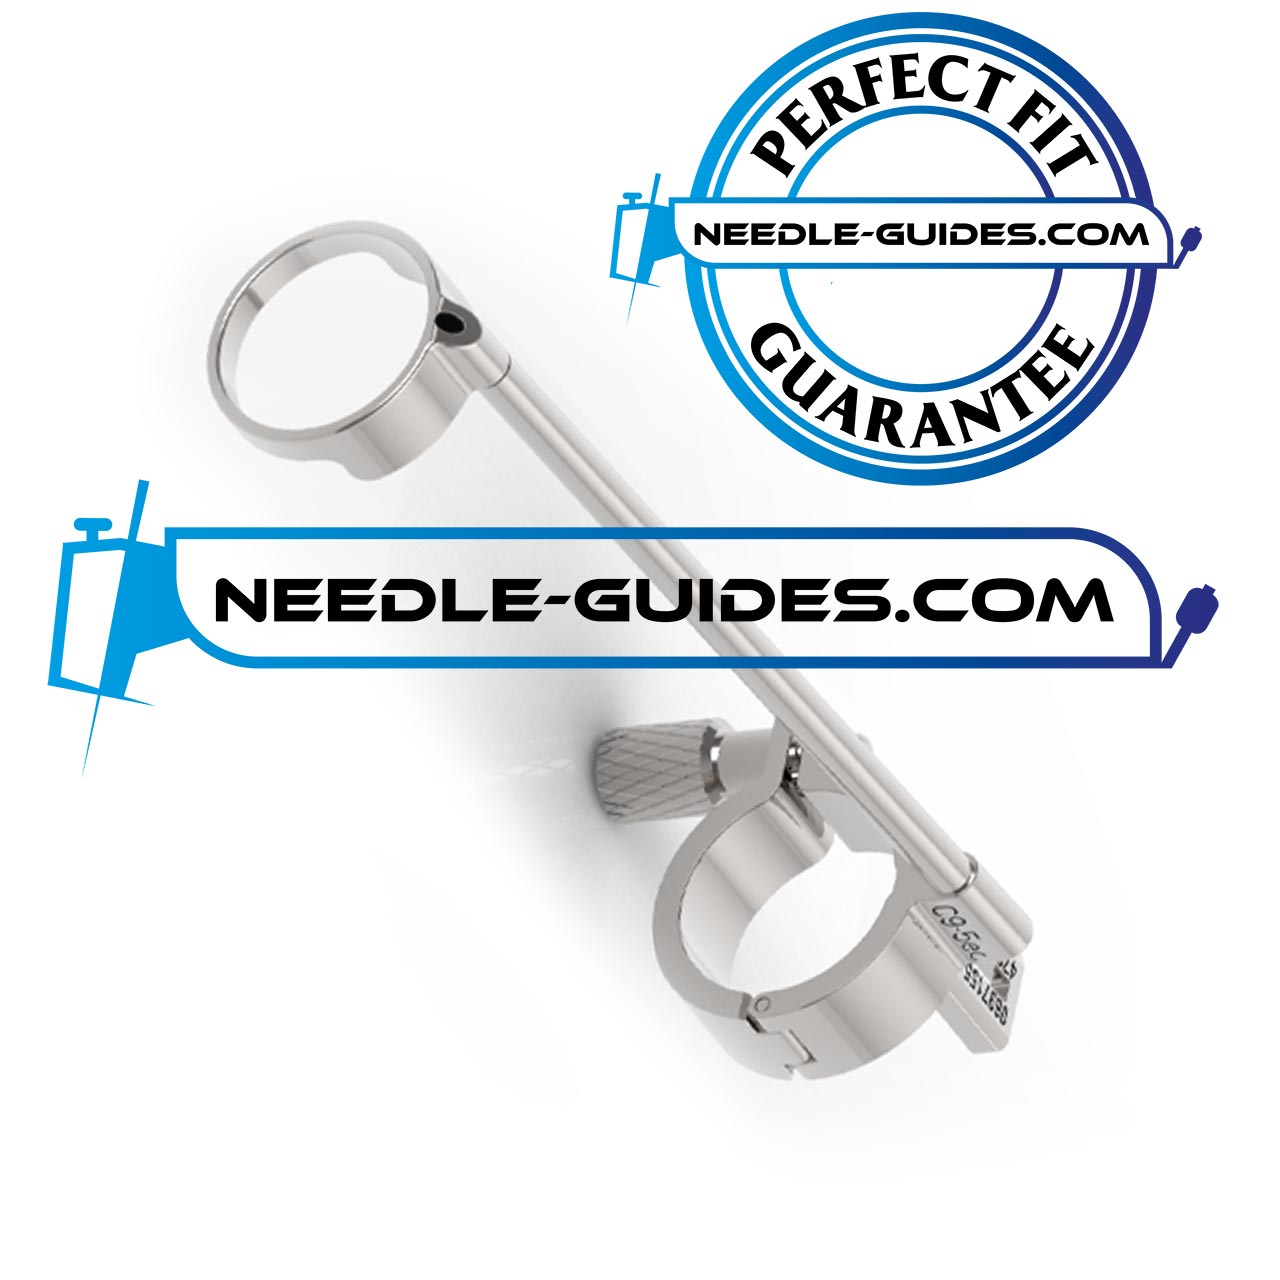 Needle guide for Sonosite